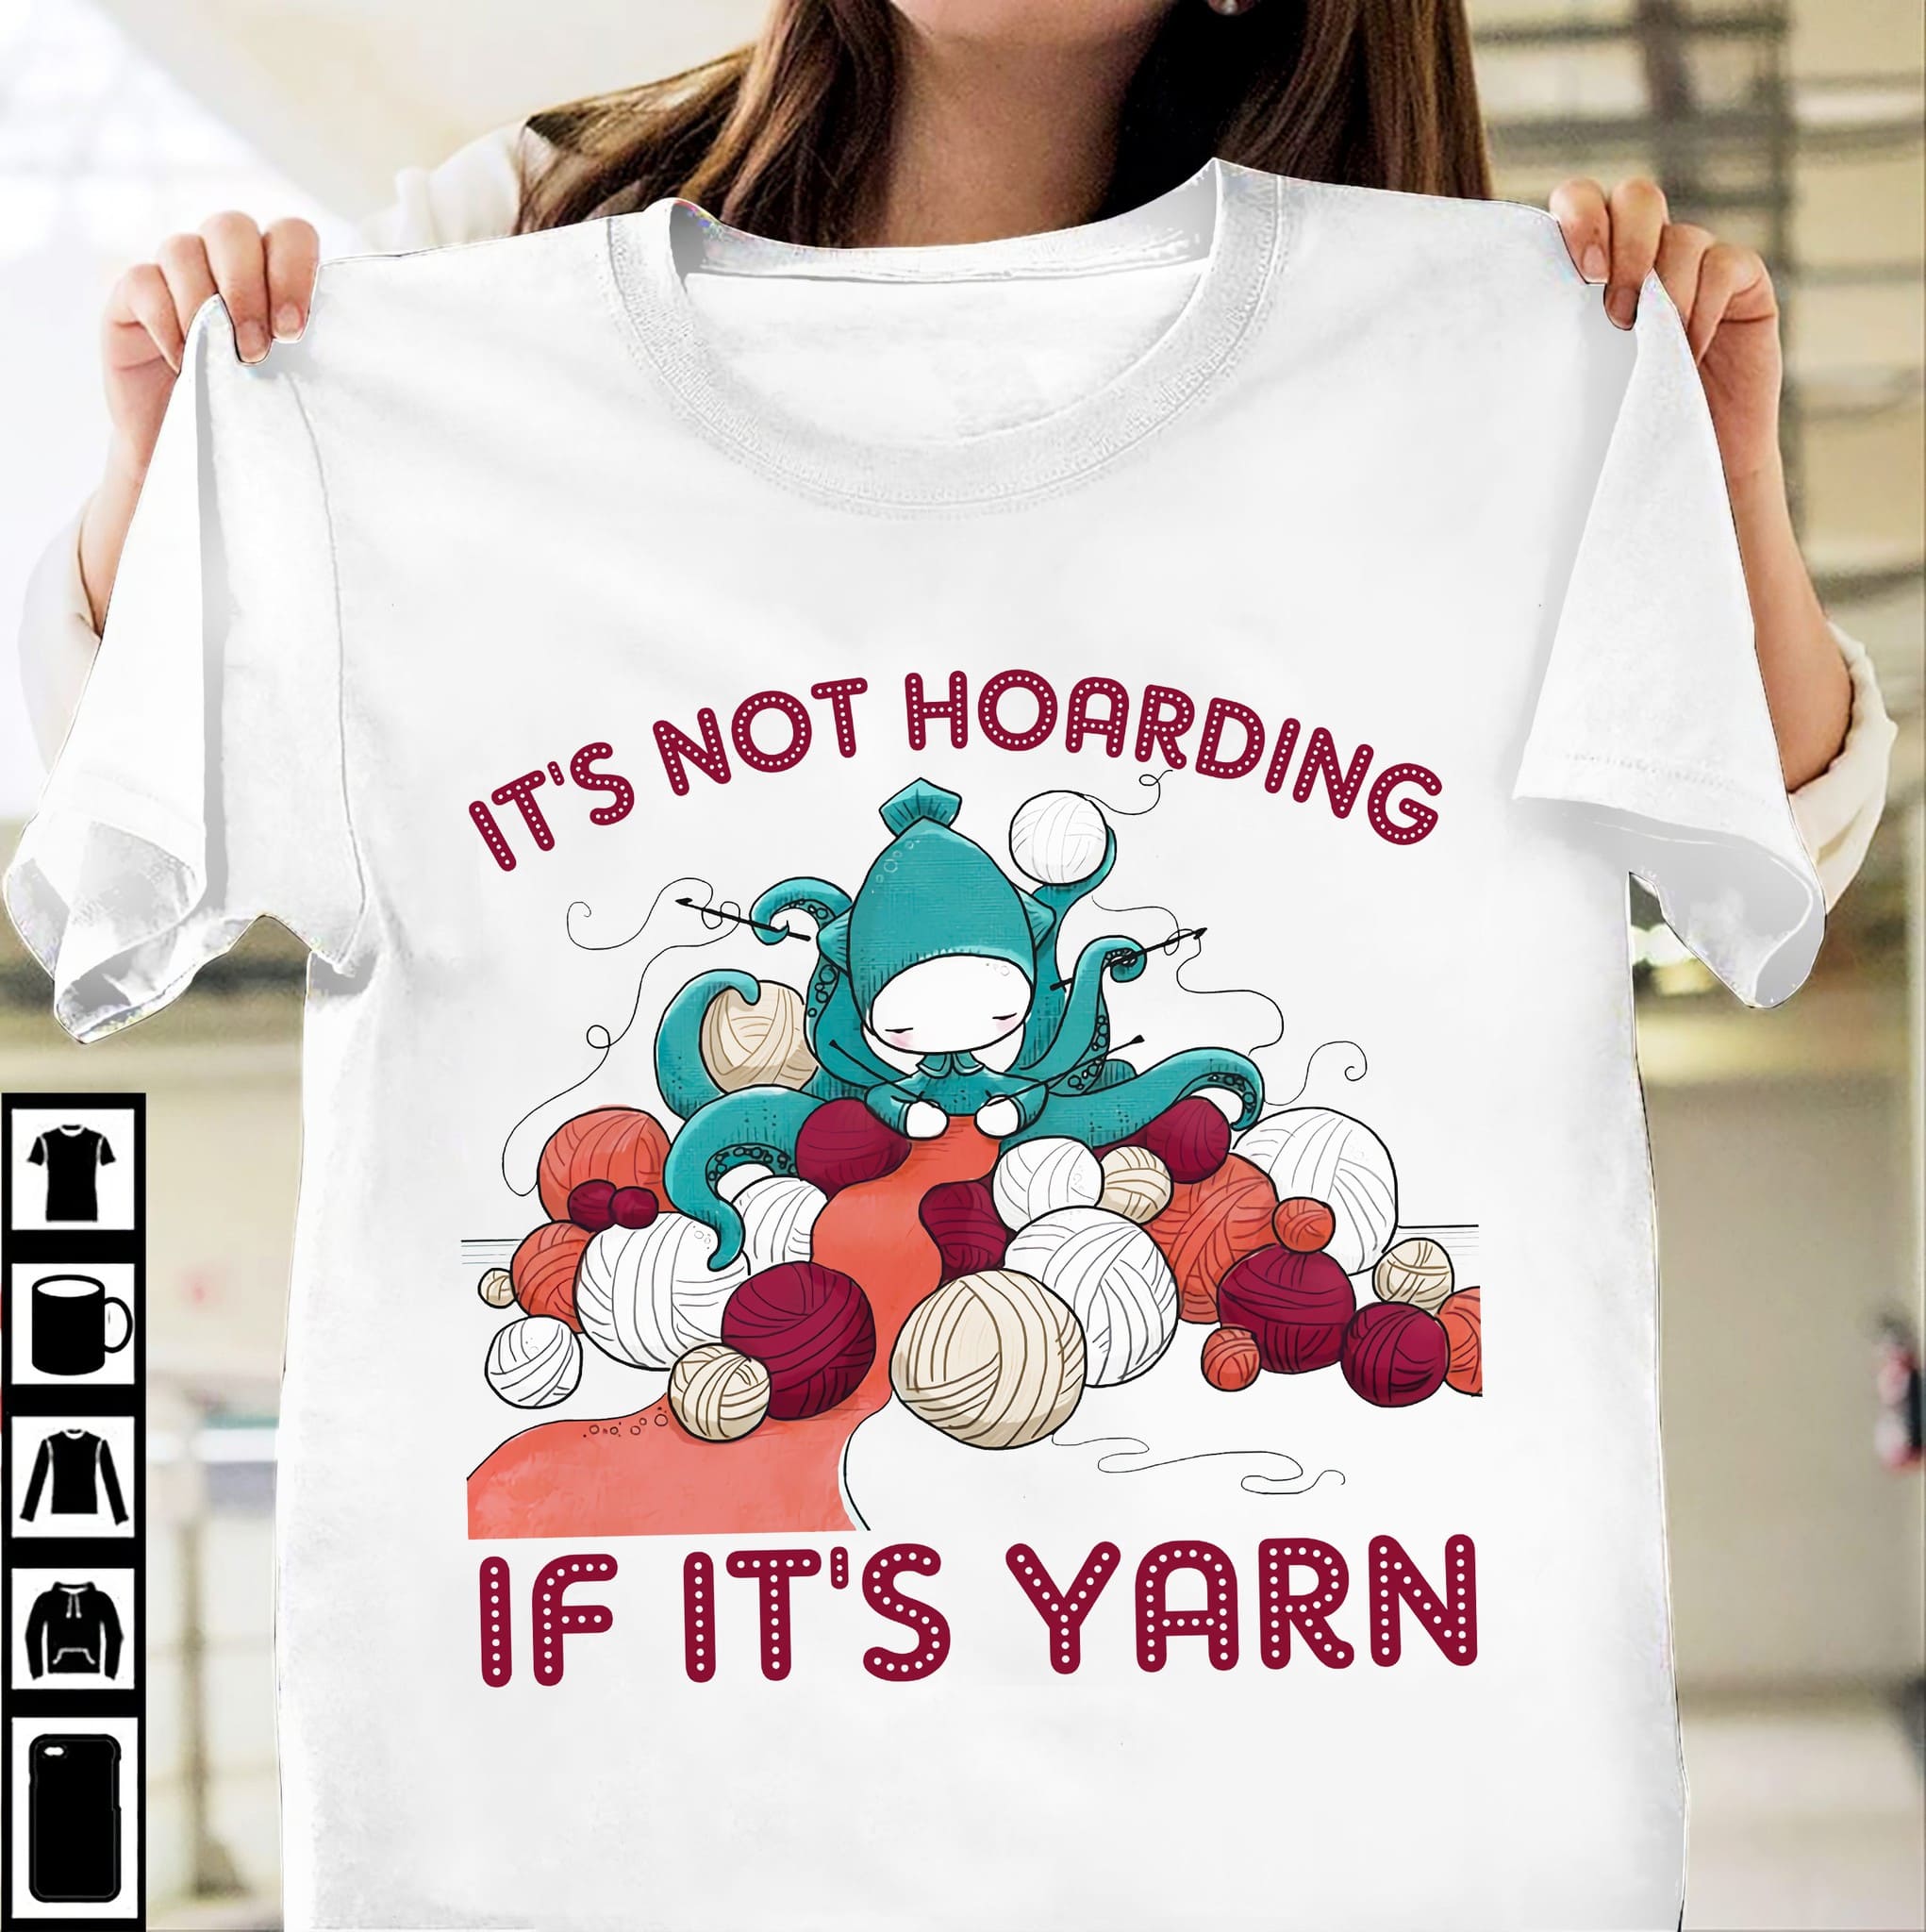 Octopus Knitting - It's not hoarding if it's yarn